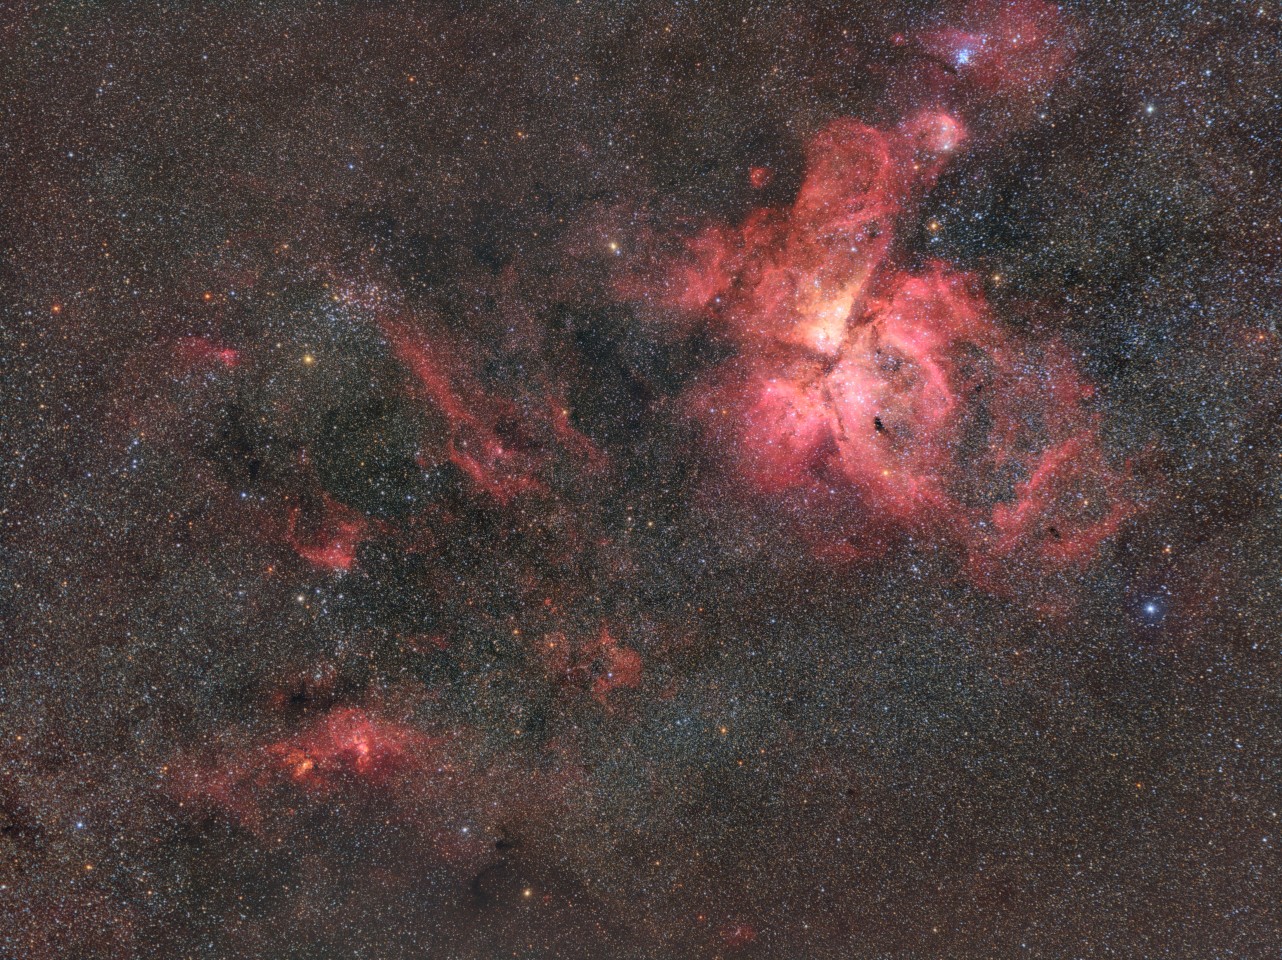 "Регион созвездия Киль". Это изображение созвездия Киля, где находится одна из самых больших и ярких туманностей в небе, Туманность Эты Киля, видна в правом верхнем углу. Это фото сделал фотограф возрастом 15 лет. Фото: Logan Nicholson